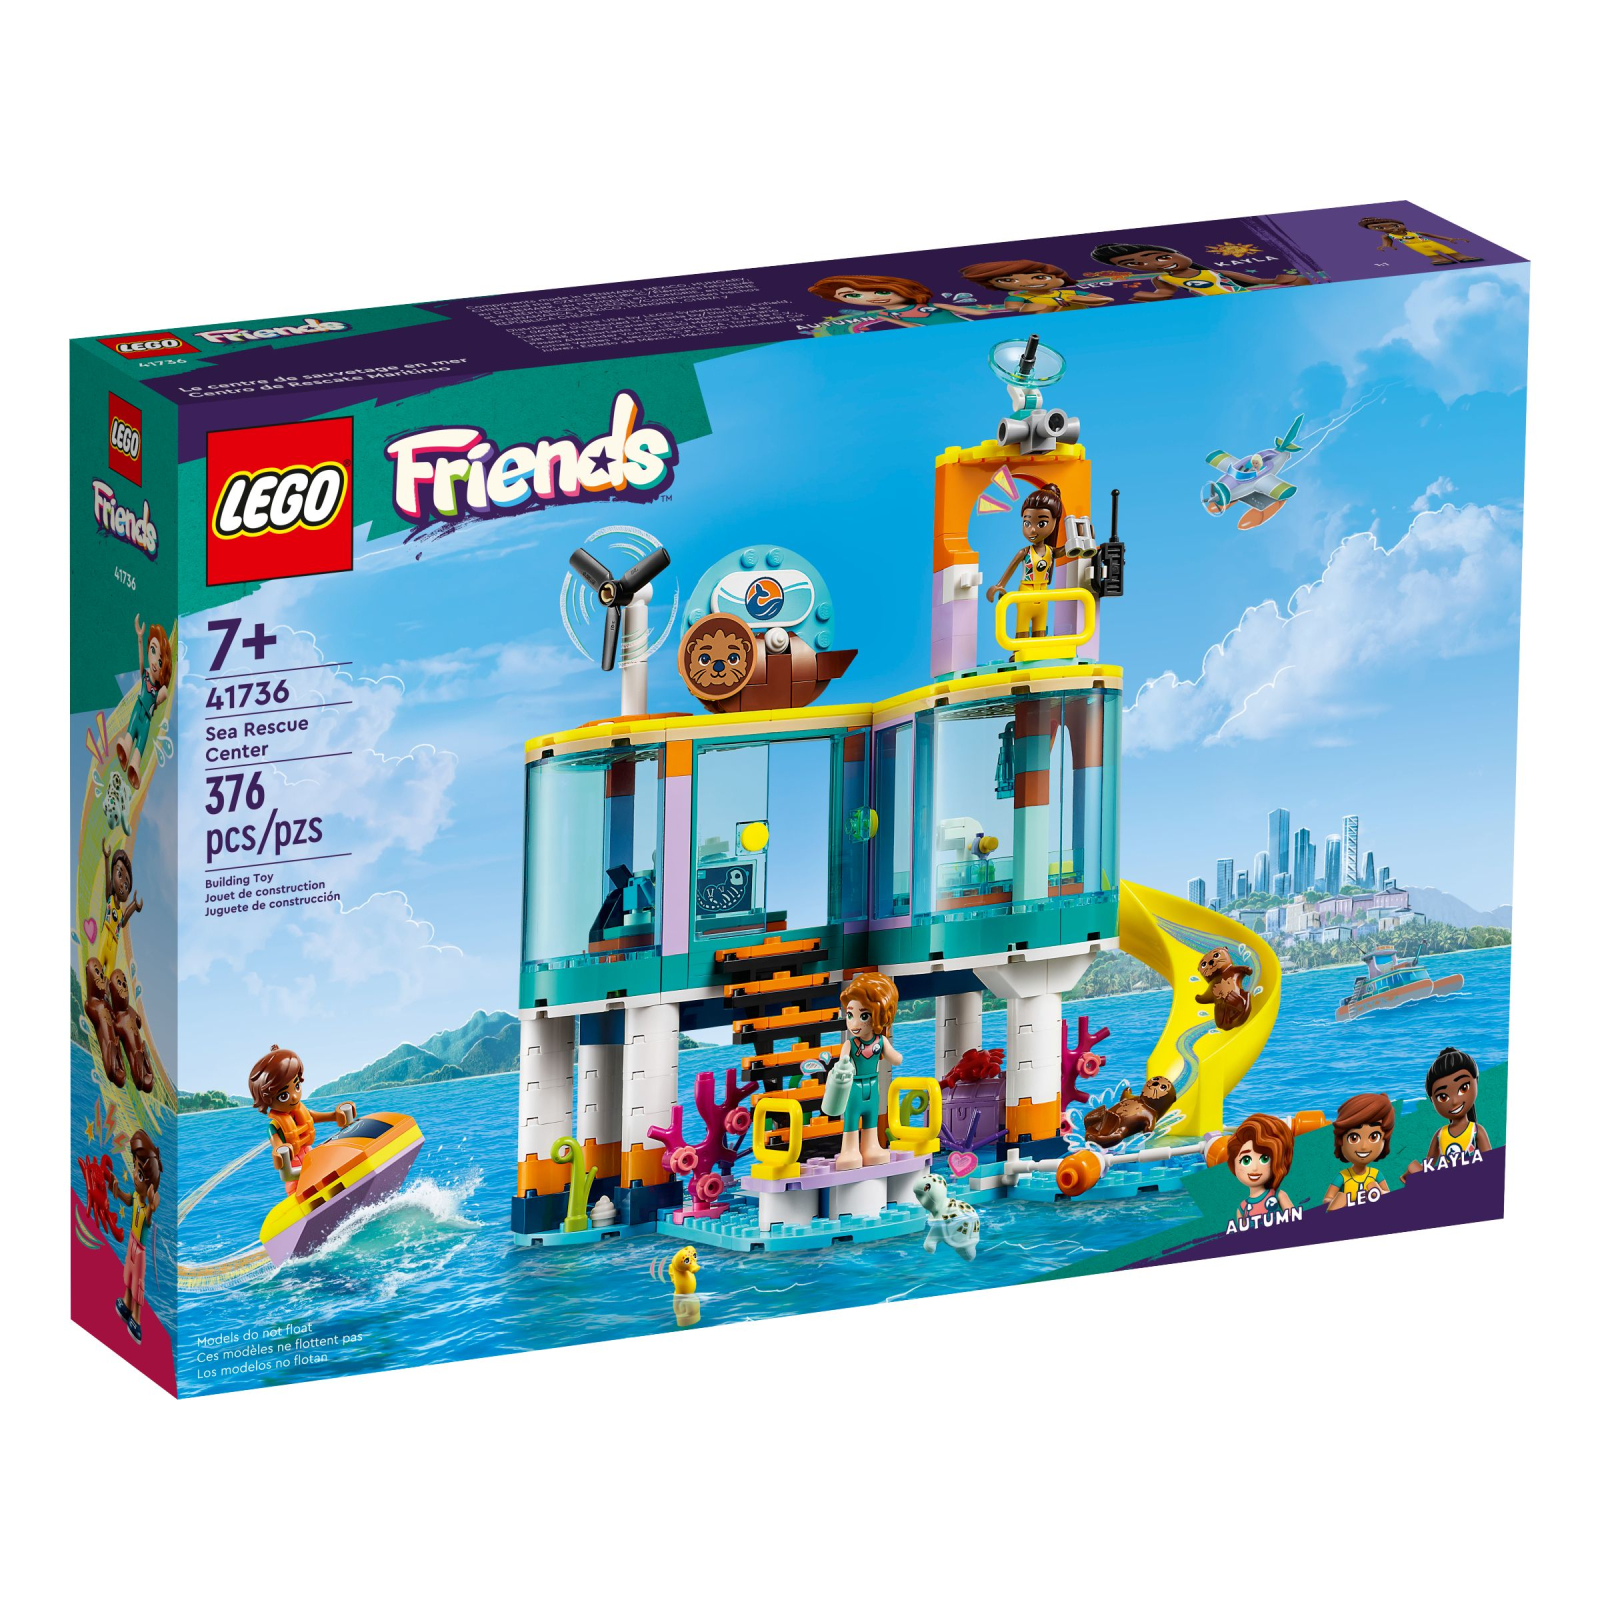 Конструктор LEGO Friends Морской спасательный центр 376 деталей (41736)